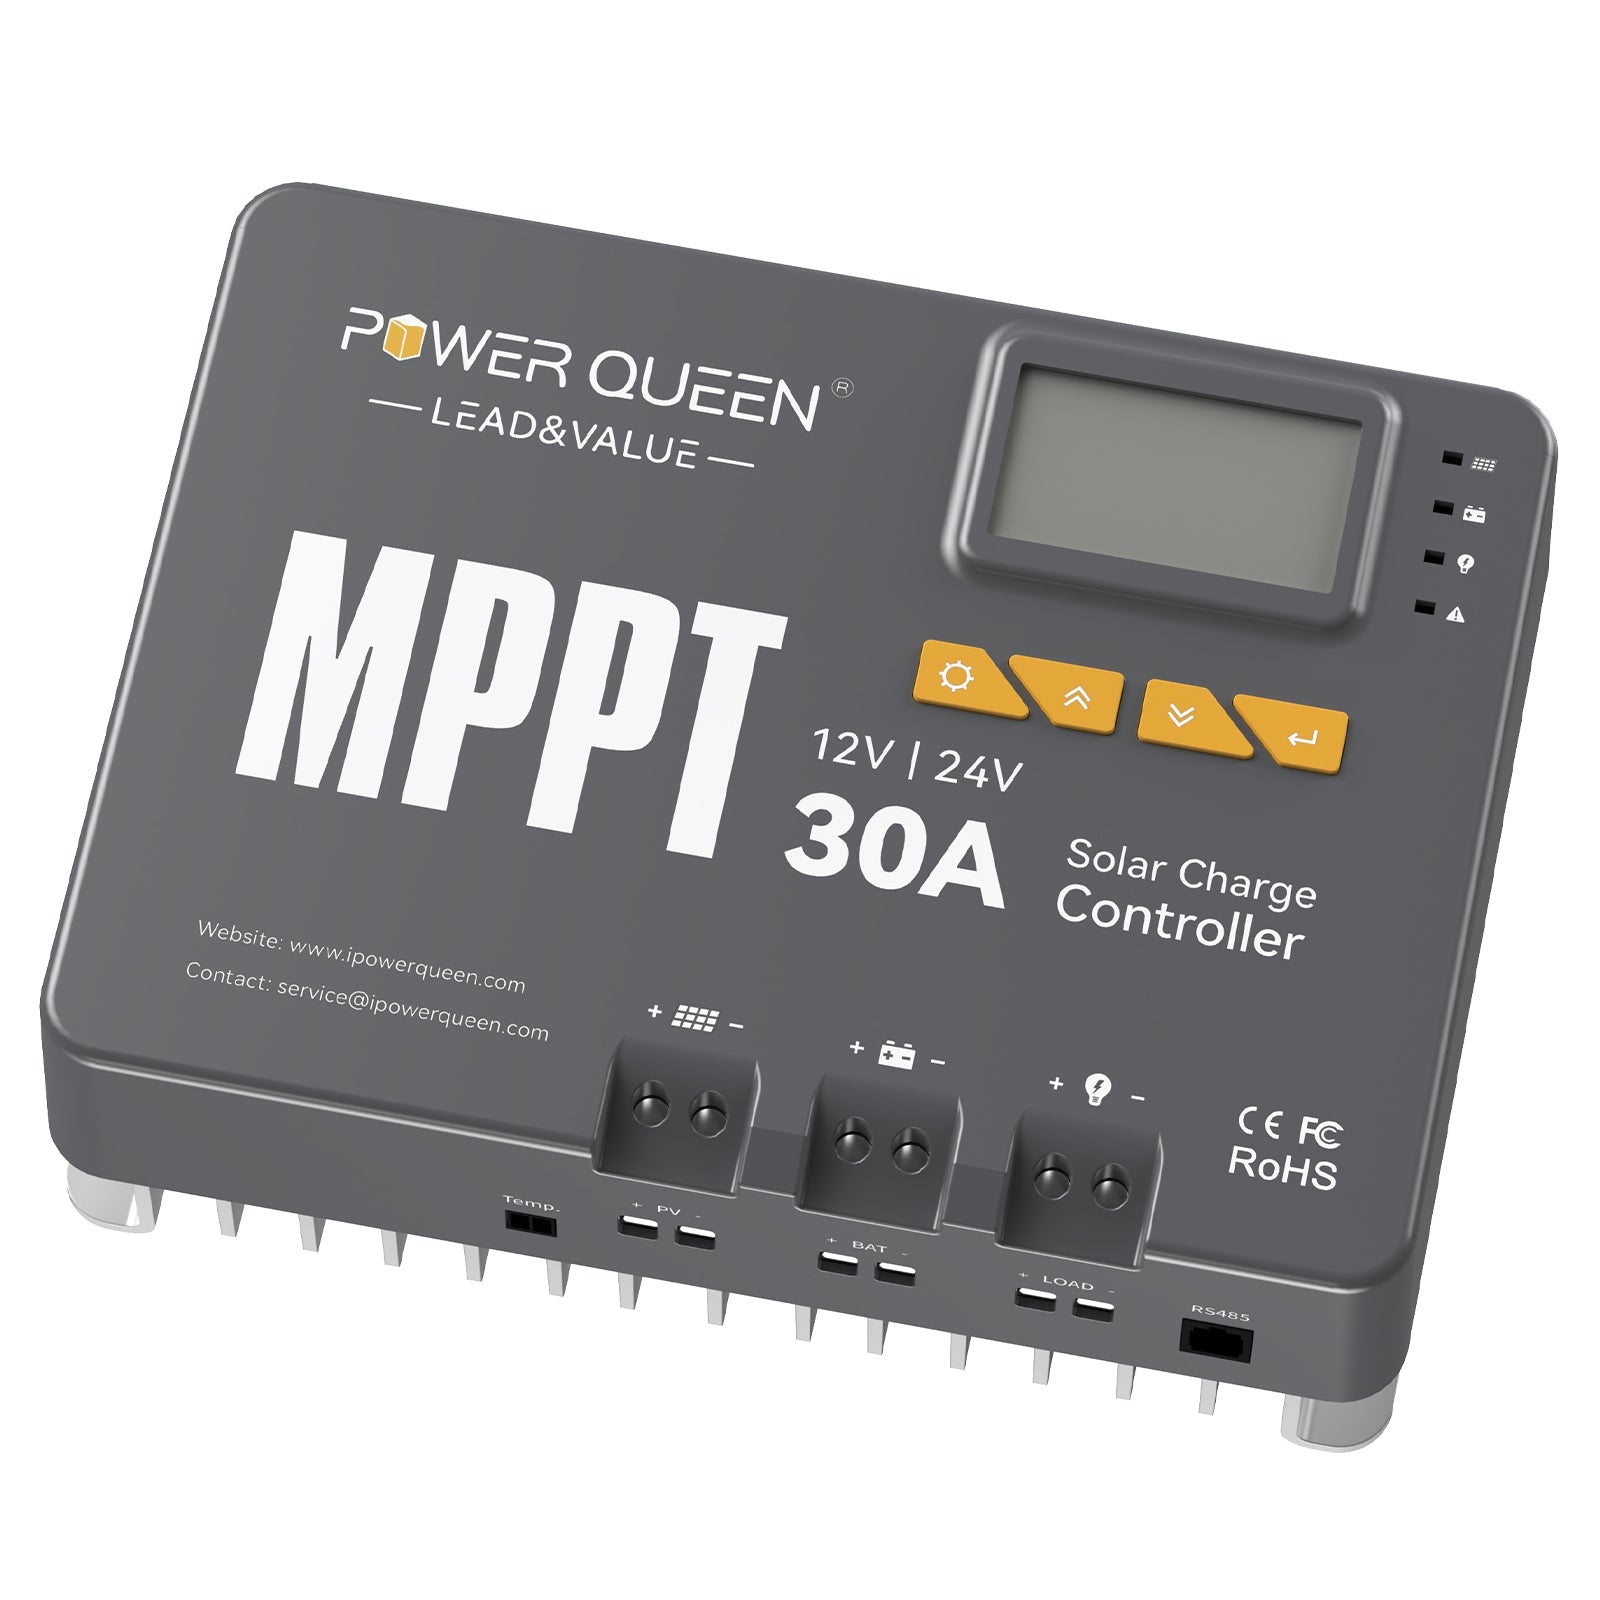 【0% IVA】Controlador de carga solar Power Queen MPPT 12/24V 30A con módulo Bluetooth